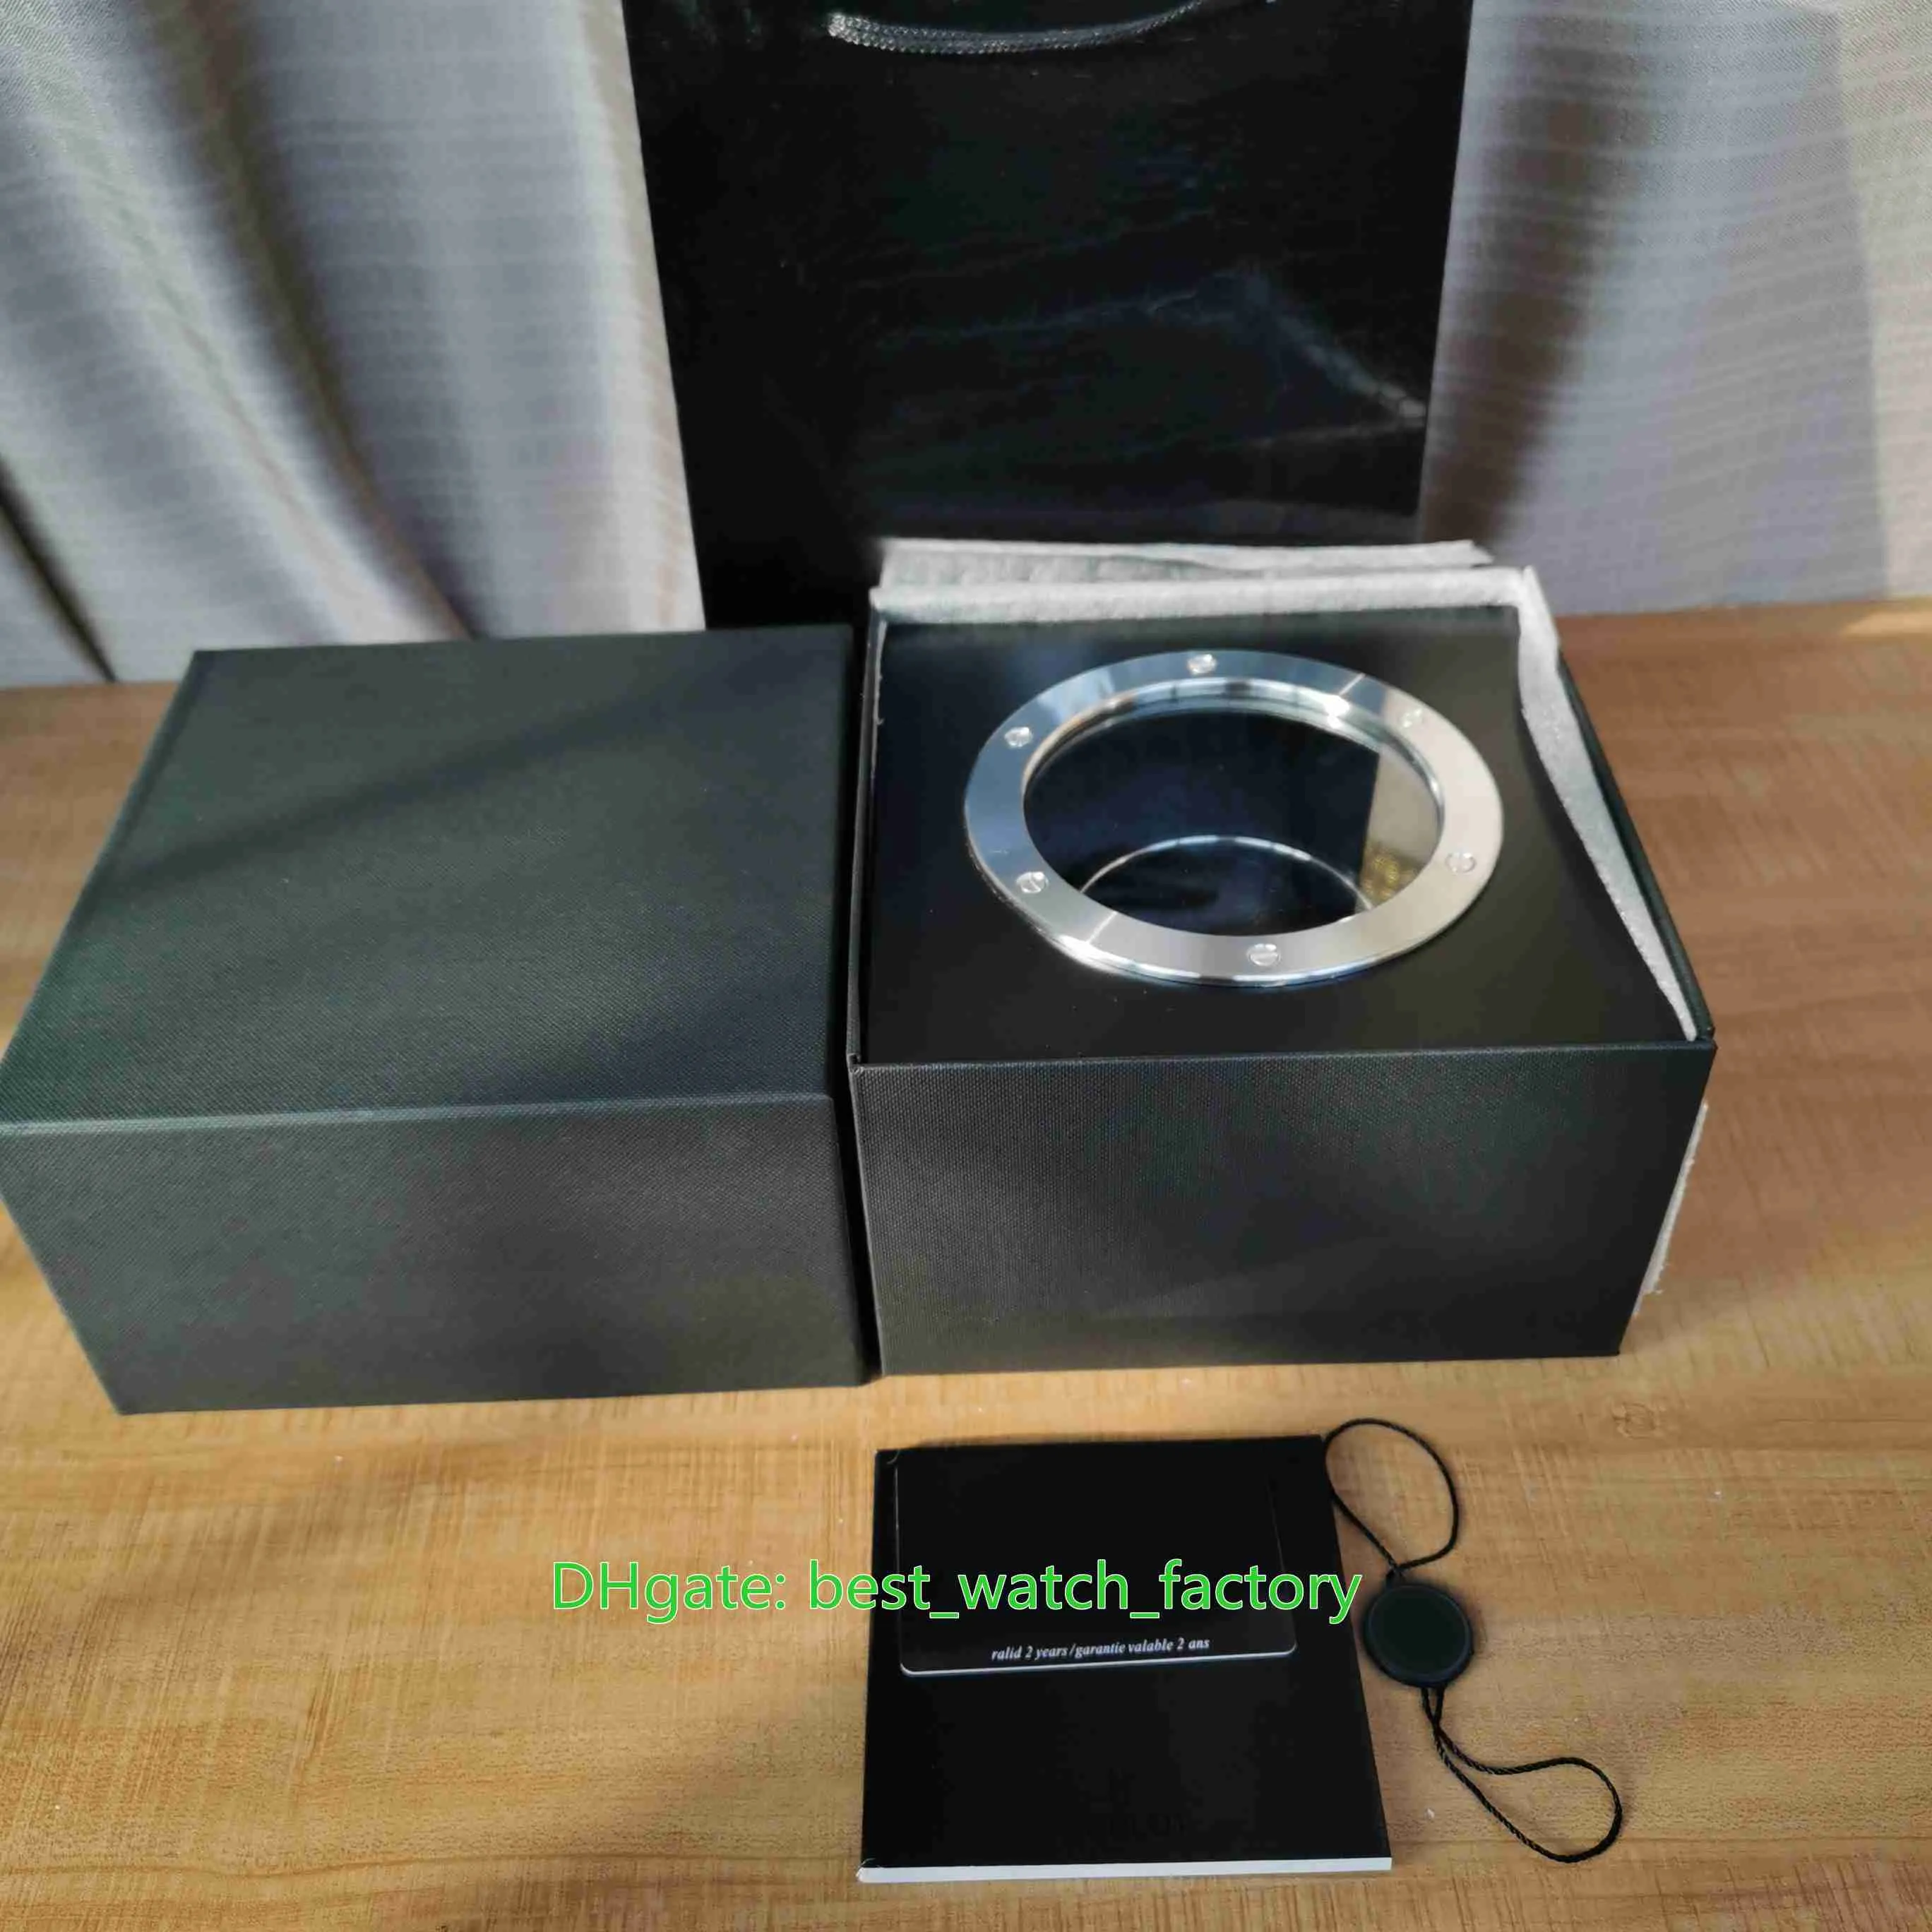 Vente de montres de qualité supérieure Boîtes HUB Montre de haute qualité Boîte d'origine Papiers Carte Verre Transparent Bois Cuir Sac à main pour Kin278J